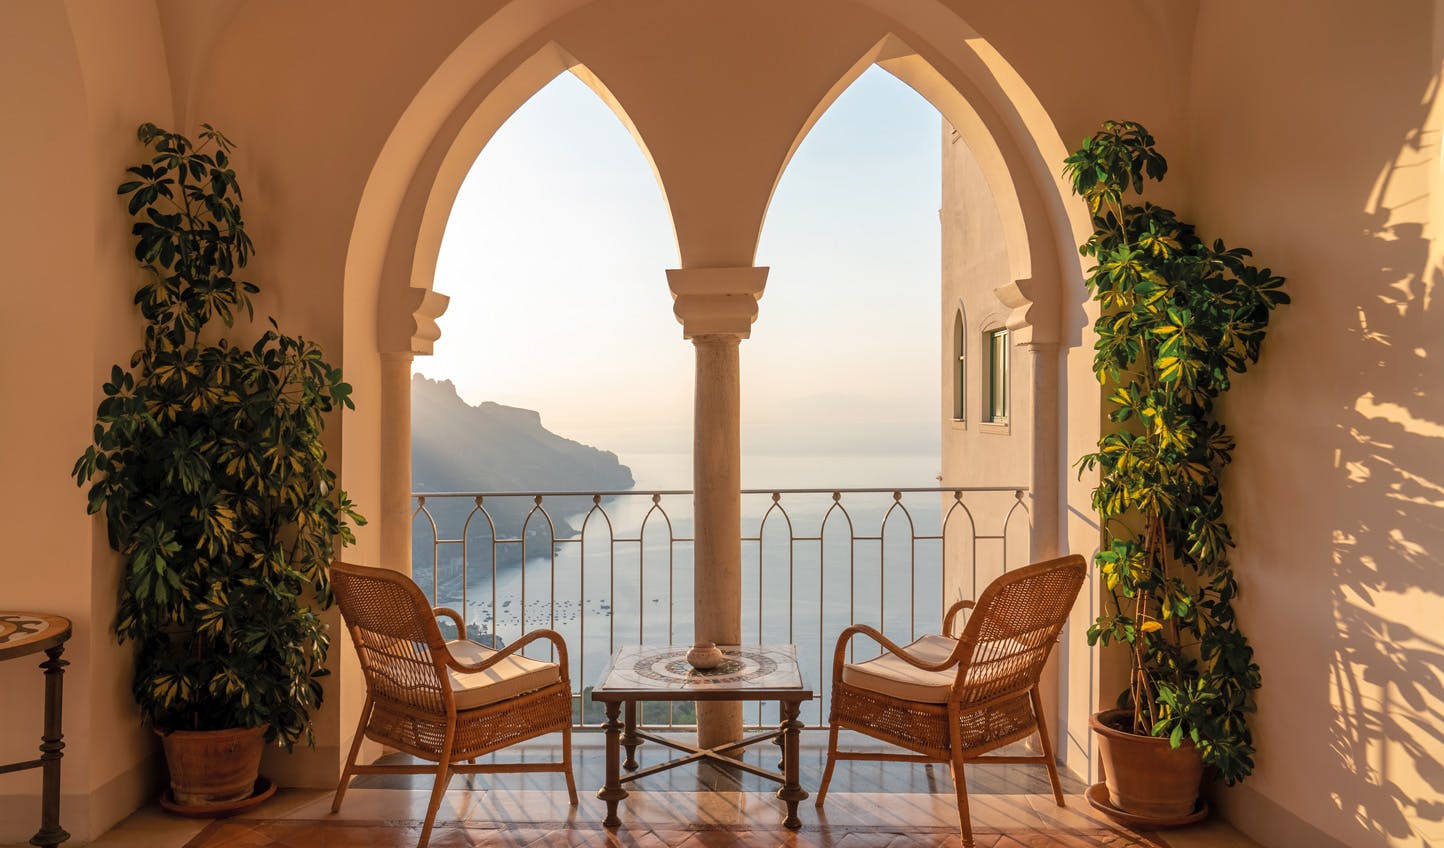 Caruso, A Belmond Hotel, Amalfi Coast - Ravello - a MICHELIN Guide Hotel